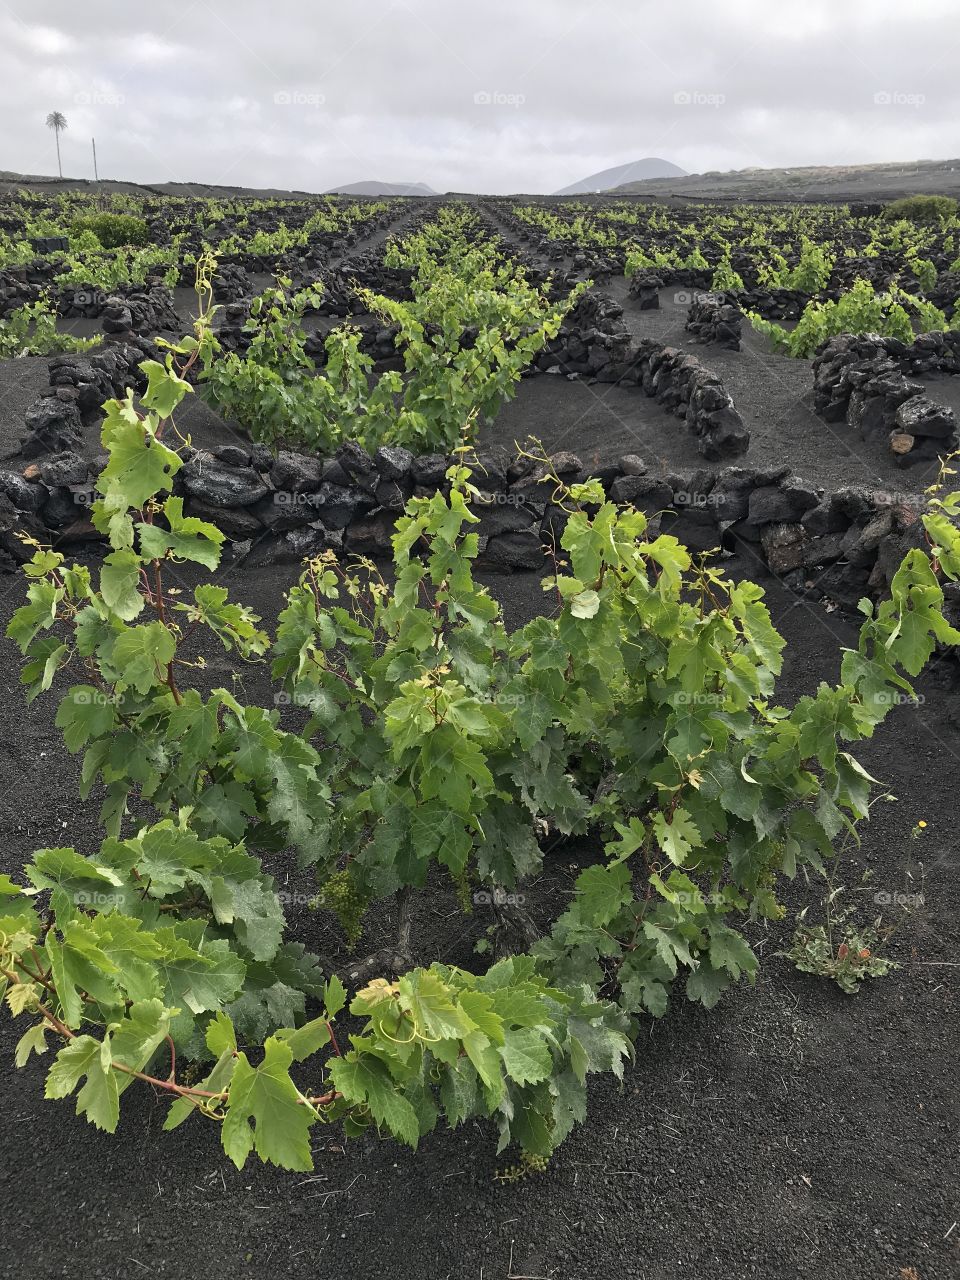 Lanzarote Spain volcano landscape vineyard 